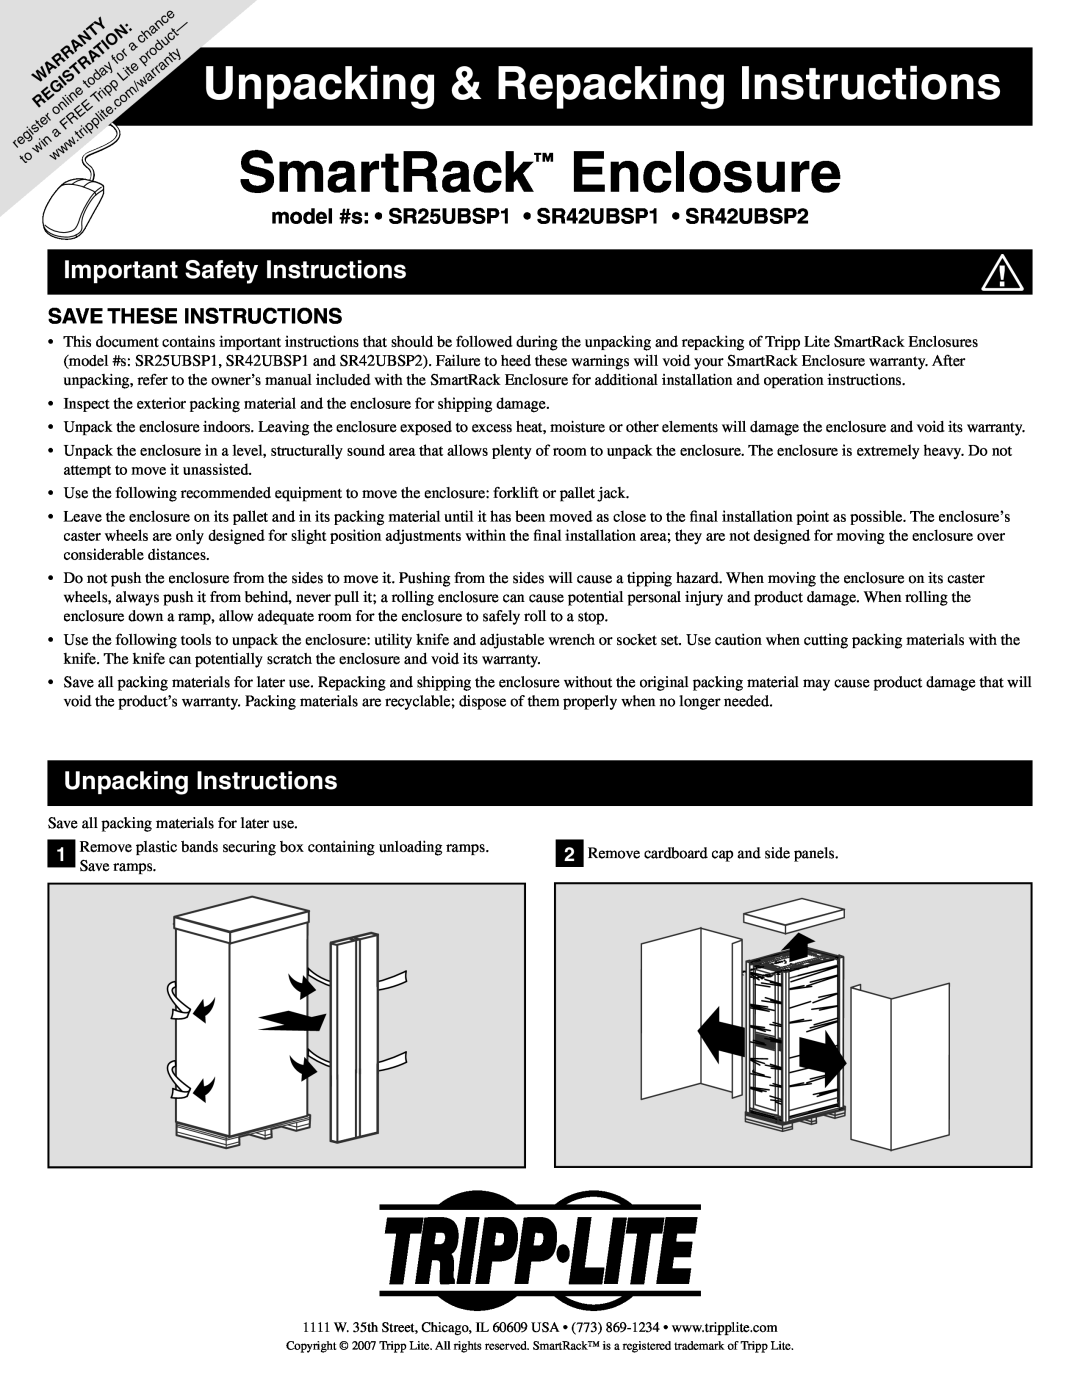 Tripp Lite SR42UBSP2, SR42UBSP1 important safety instructions Important Safety Instructions, Unpacking Instructions 